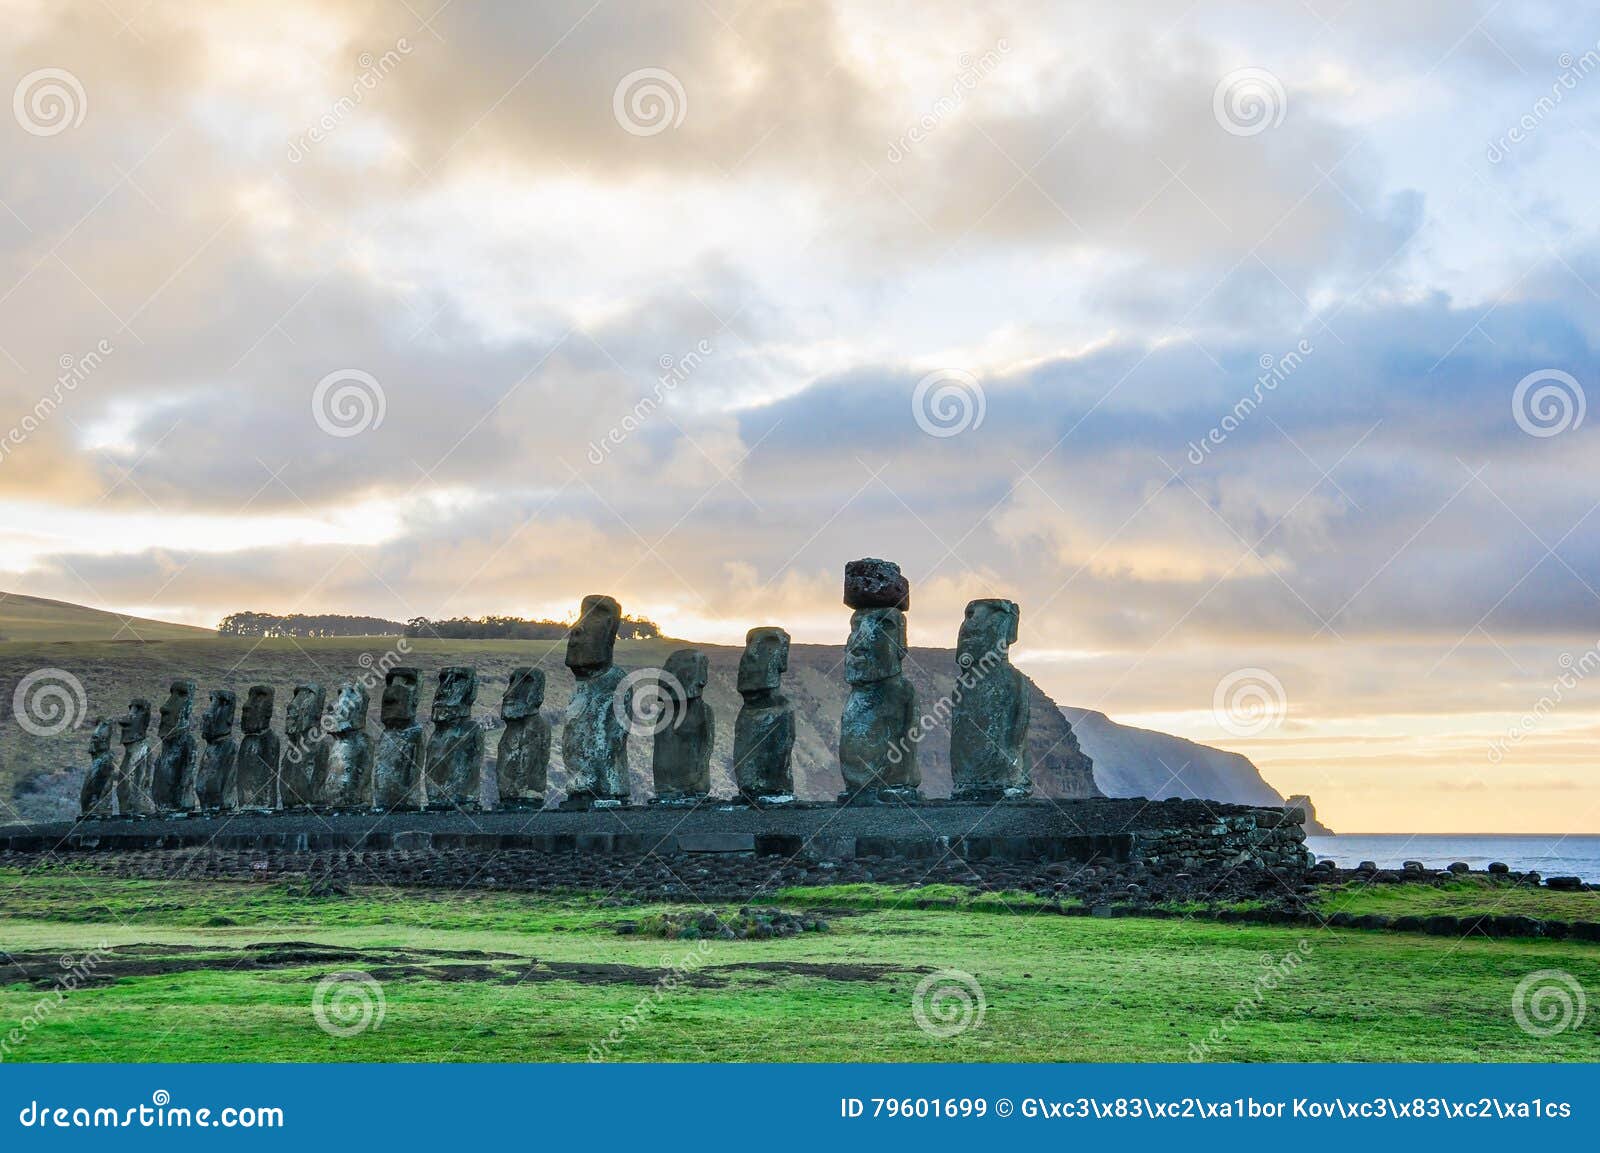 Alba al Ahu Tongariki nell'isola di pasqua, Cile. Foto di HDR dell'alba al sito di moai di Ahu Tongariki sulla costa dell'isola di pasqua, Cile